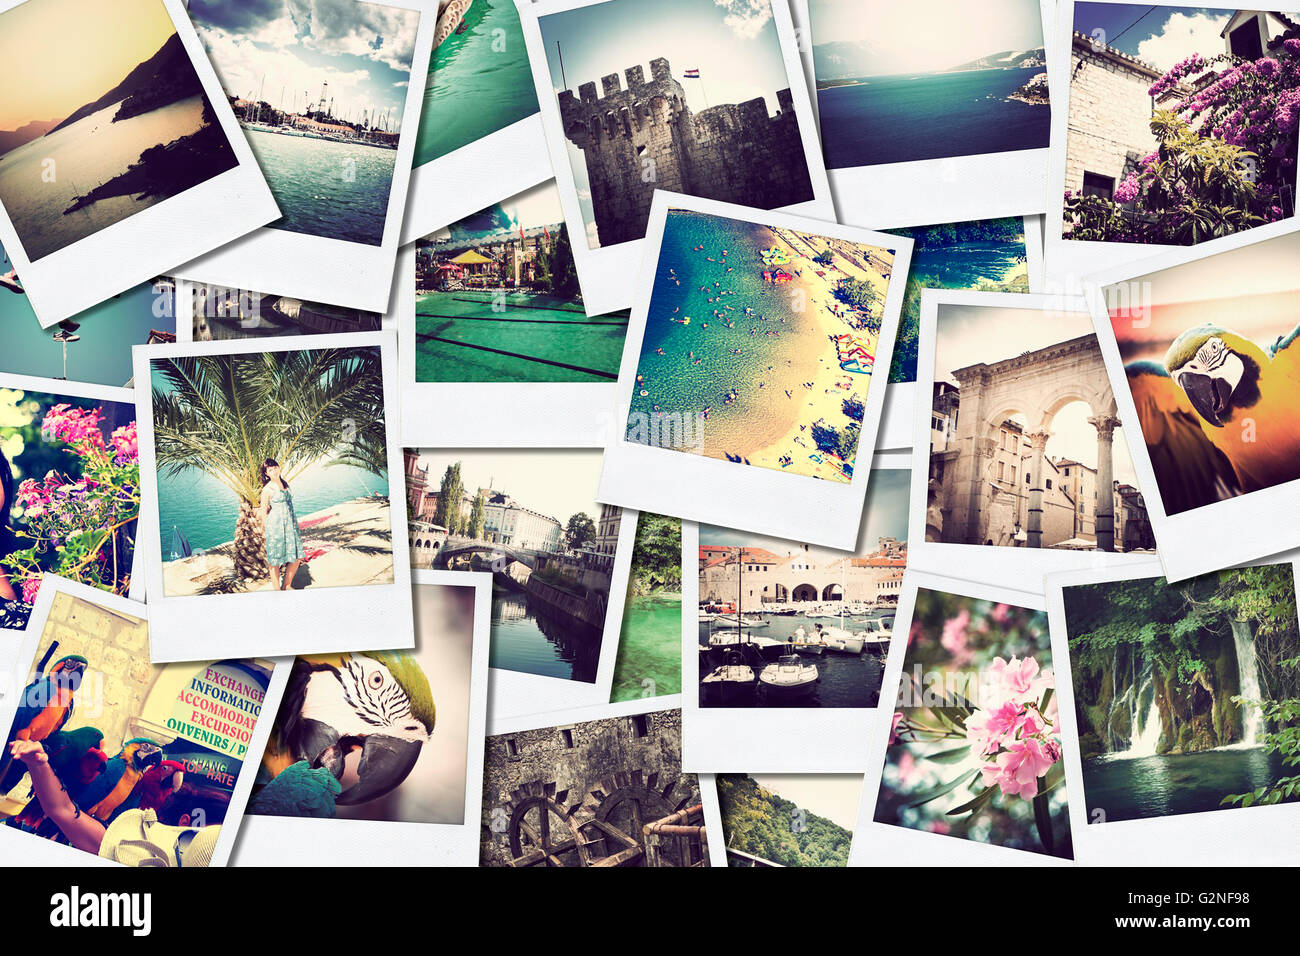 Mosaico con immagini di diversi luoghi e paesaggi, ripresi da me, simulando una parete di istantanee caricati ne sociale Foto Stock